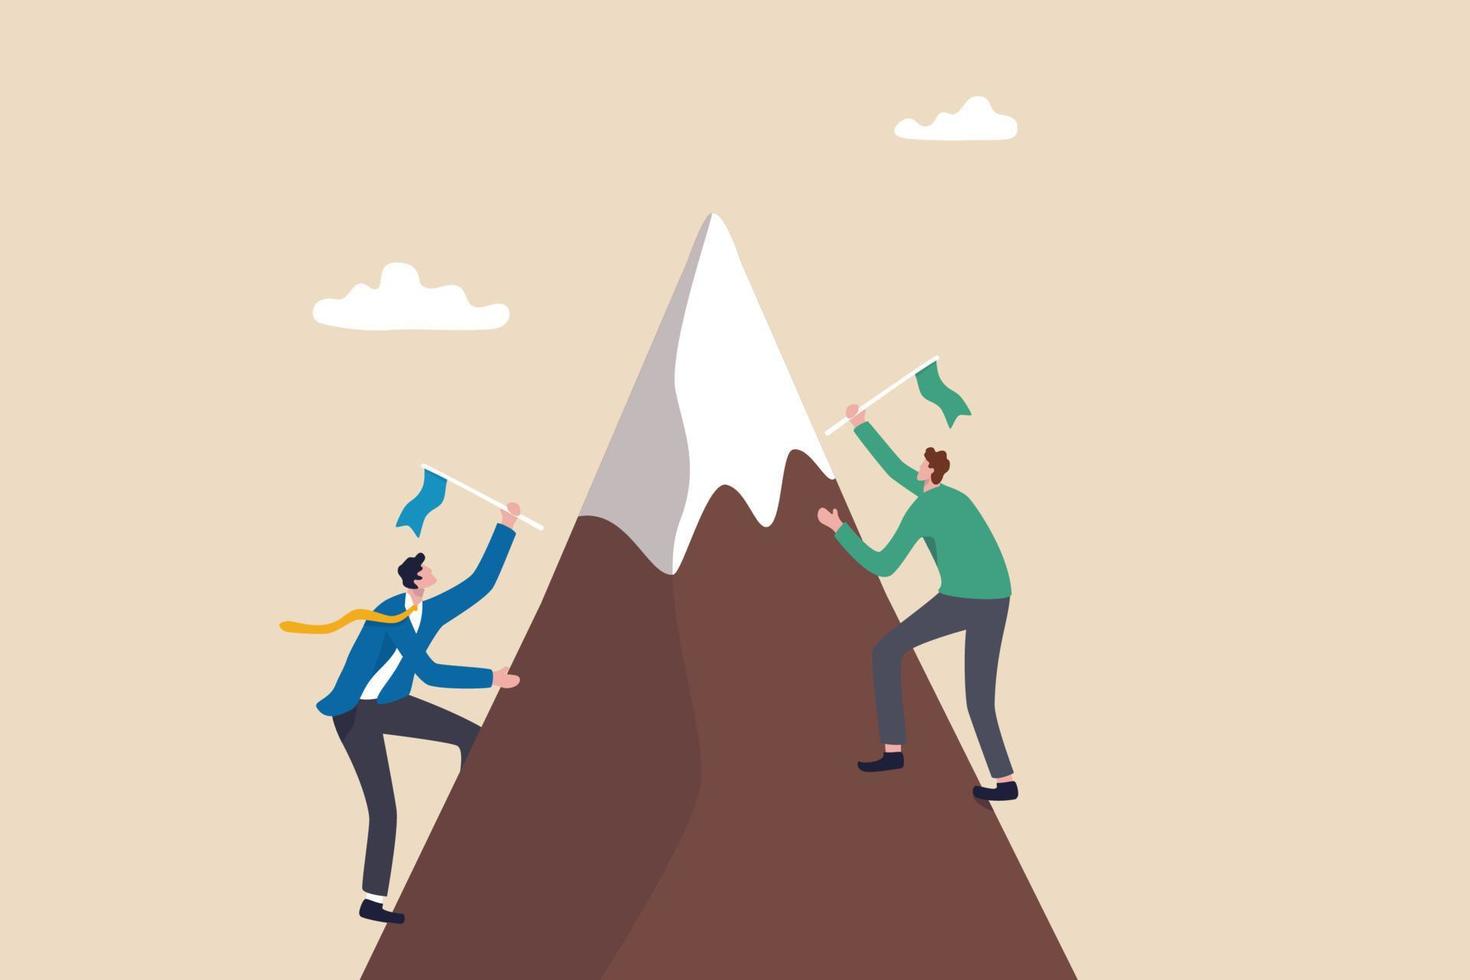 zakelijke concurrentie, zakenman strijden om te winnen en het succesdoel, uitdaging of carrièreprestatieconcept te bereiken, zakenliedenconcurrent klimt de berg op om de winnende vlag op de bergtop te zetten. vector